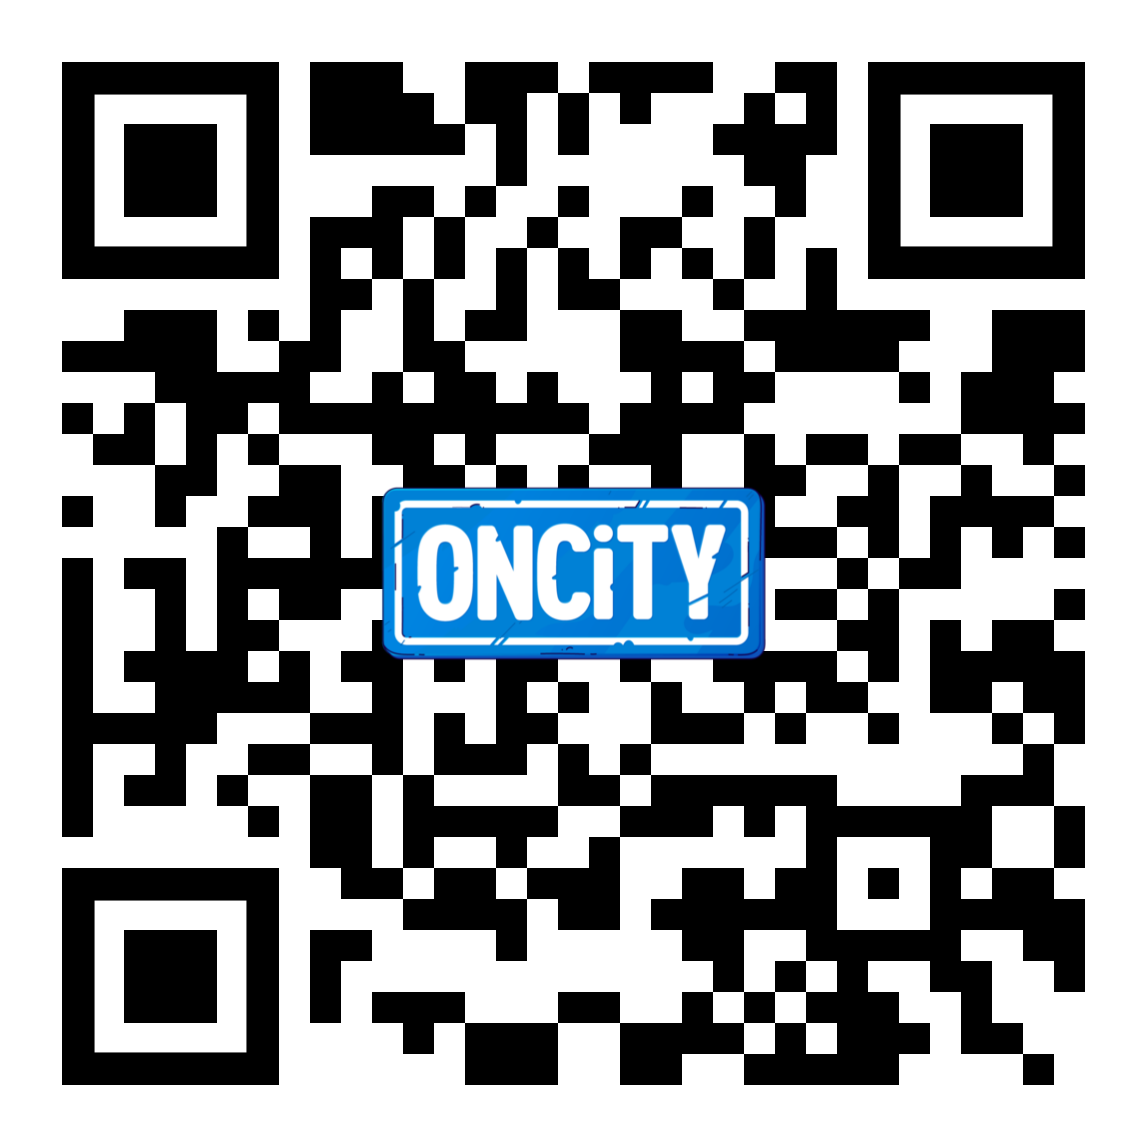 Código QR con logo de ONCITY en el centro